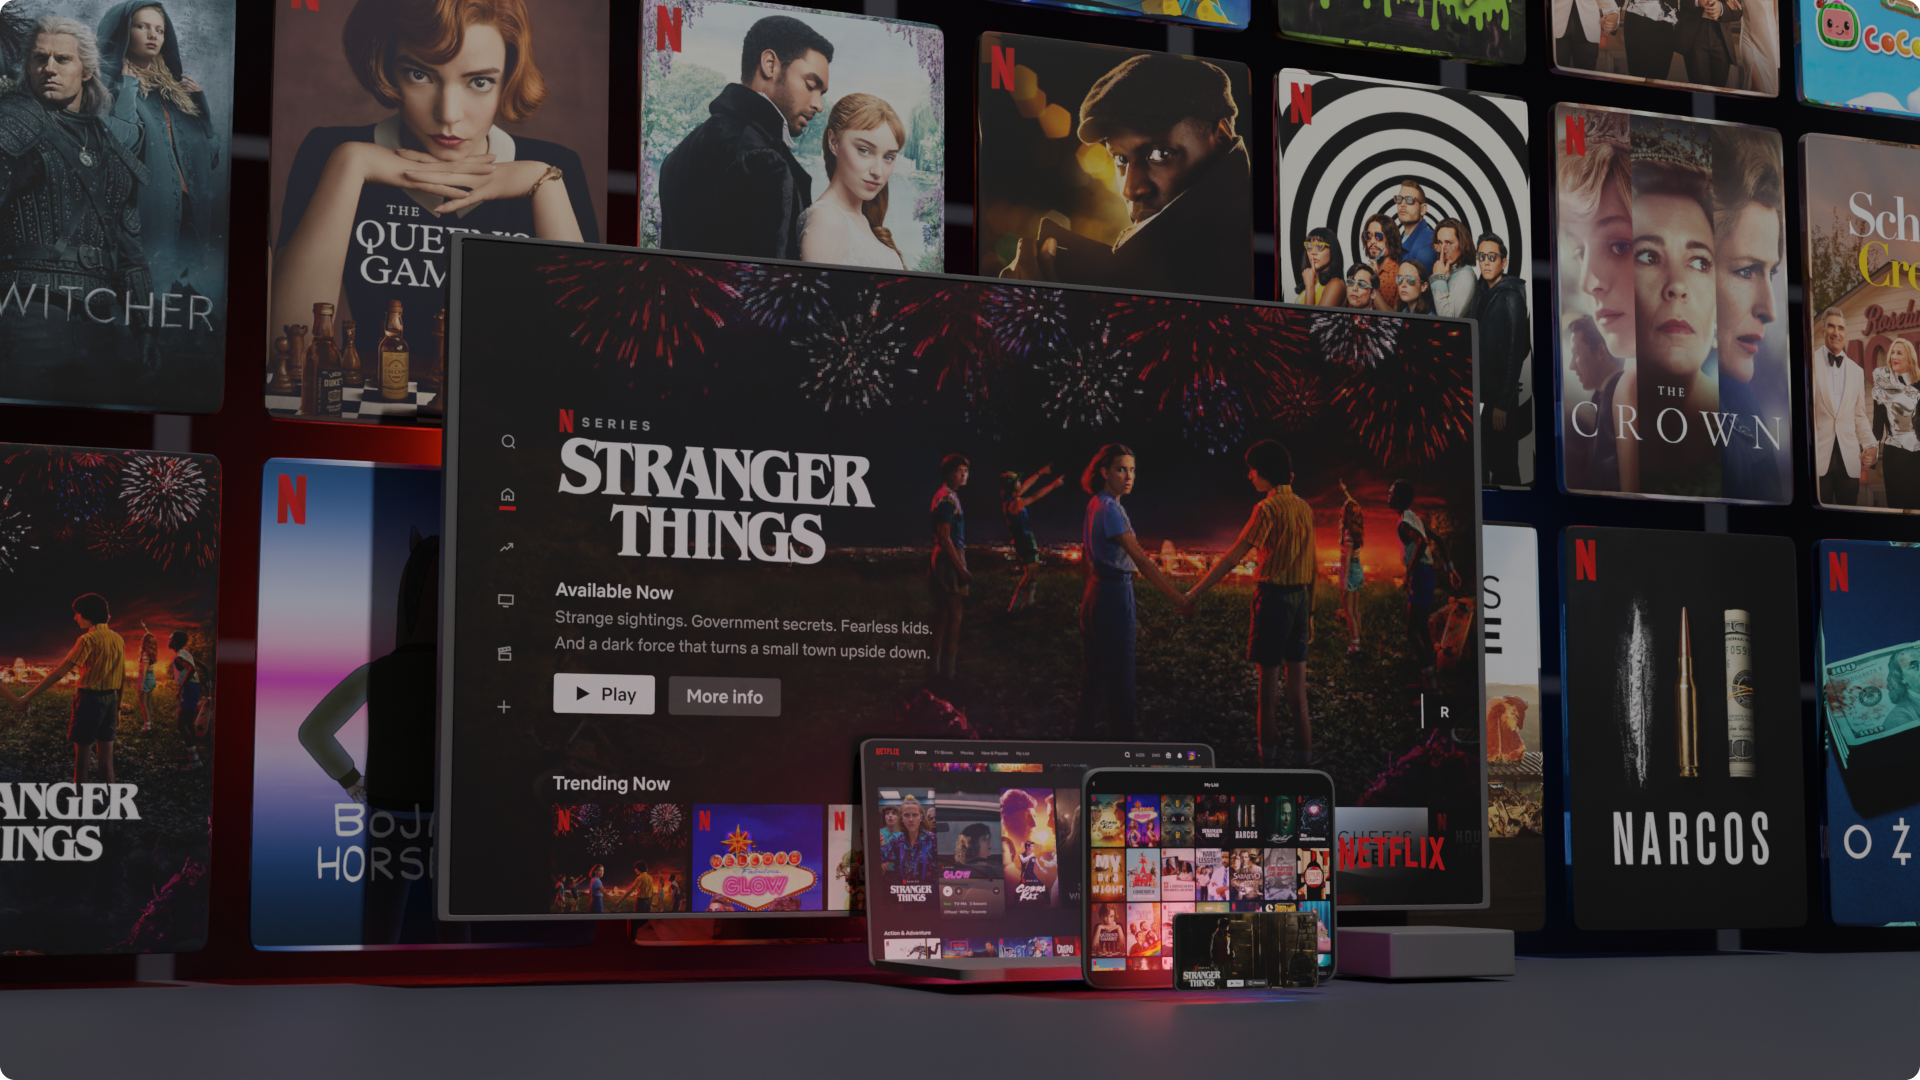 Oglądanie materiałów z serwisu Netflix na różnych urządzeniach